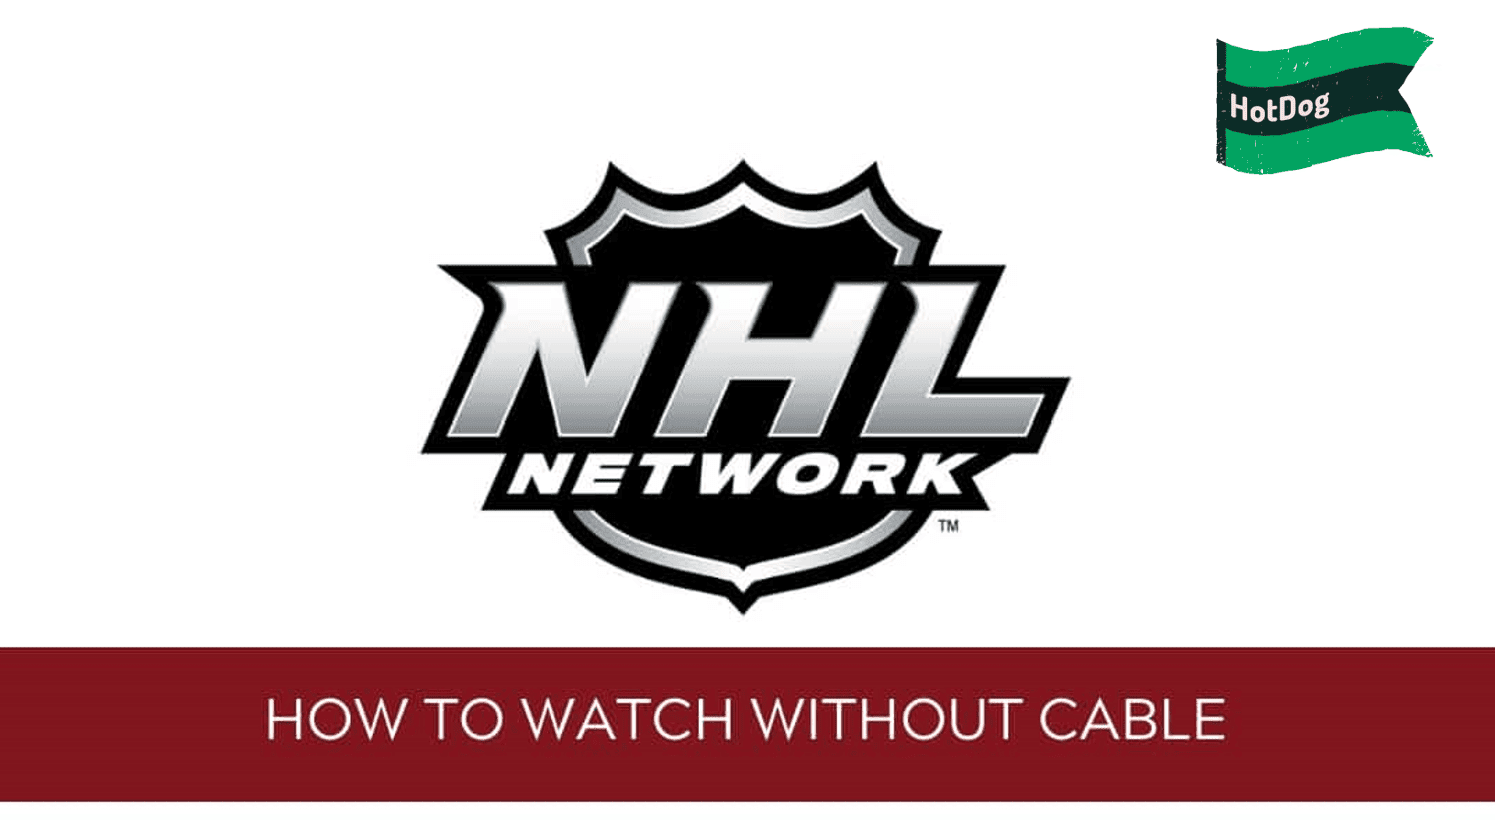 Bruins vs. Devils: Live stream, start time, TV channel (Sun., Mar